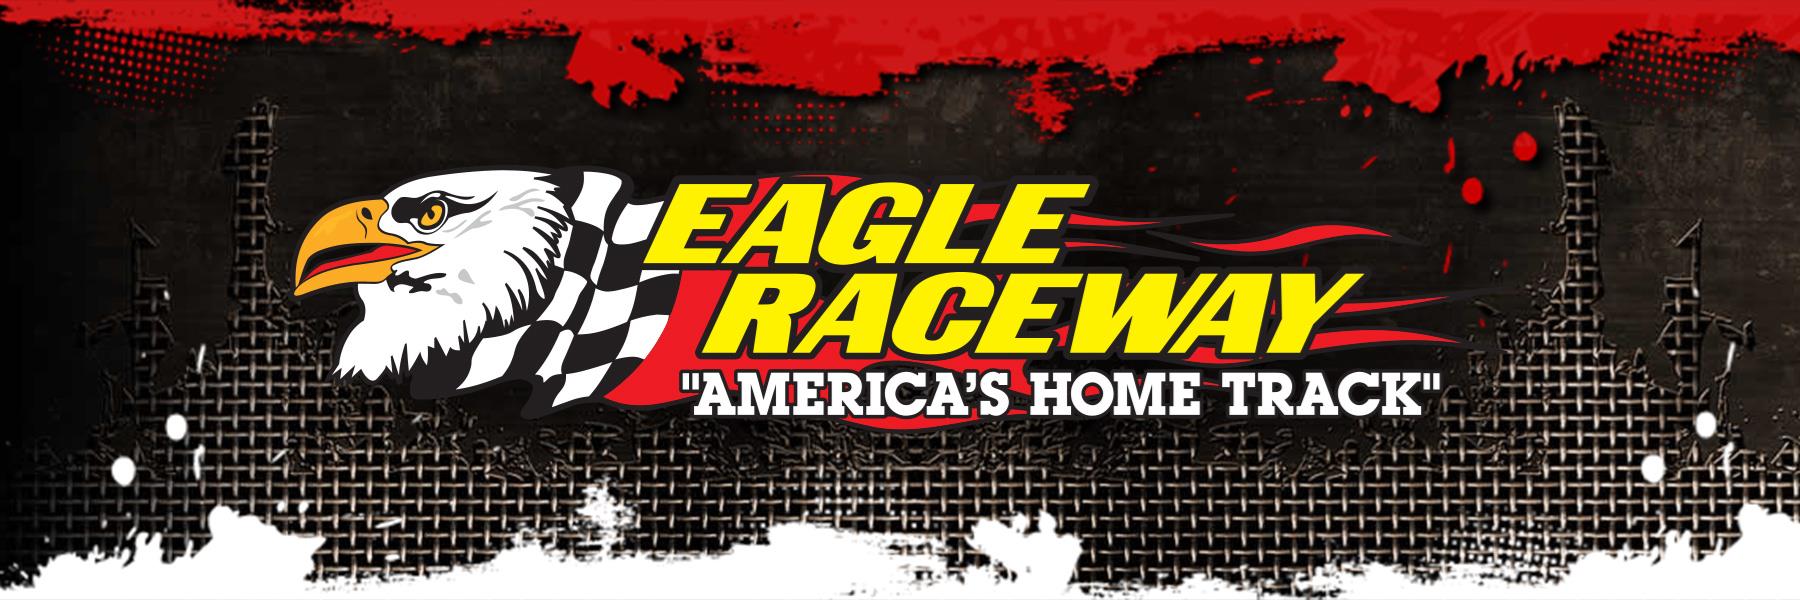 6/13/2020 - Eagle Raceway